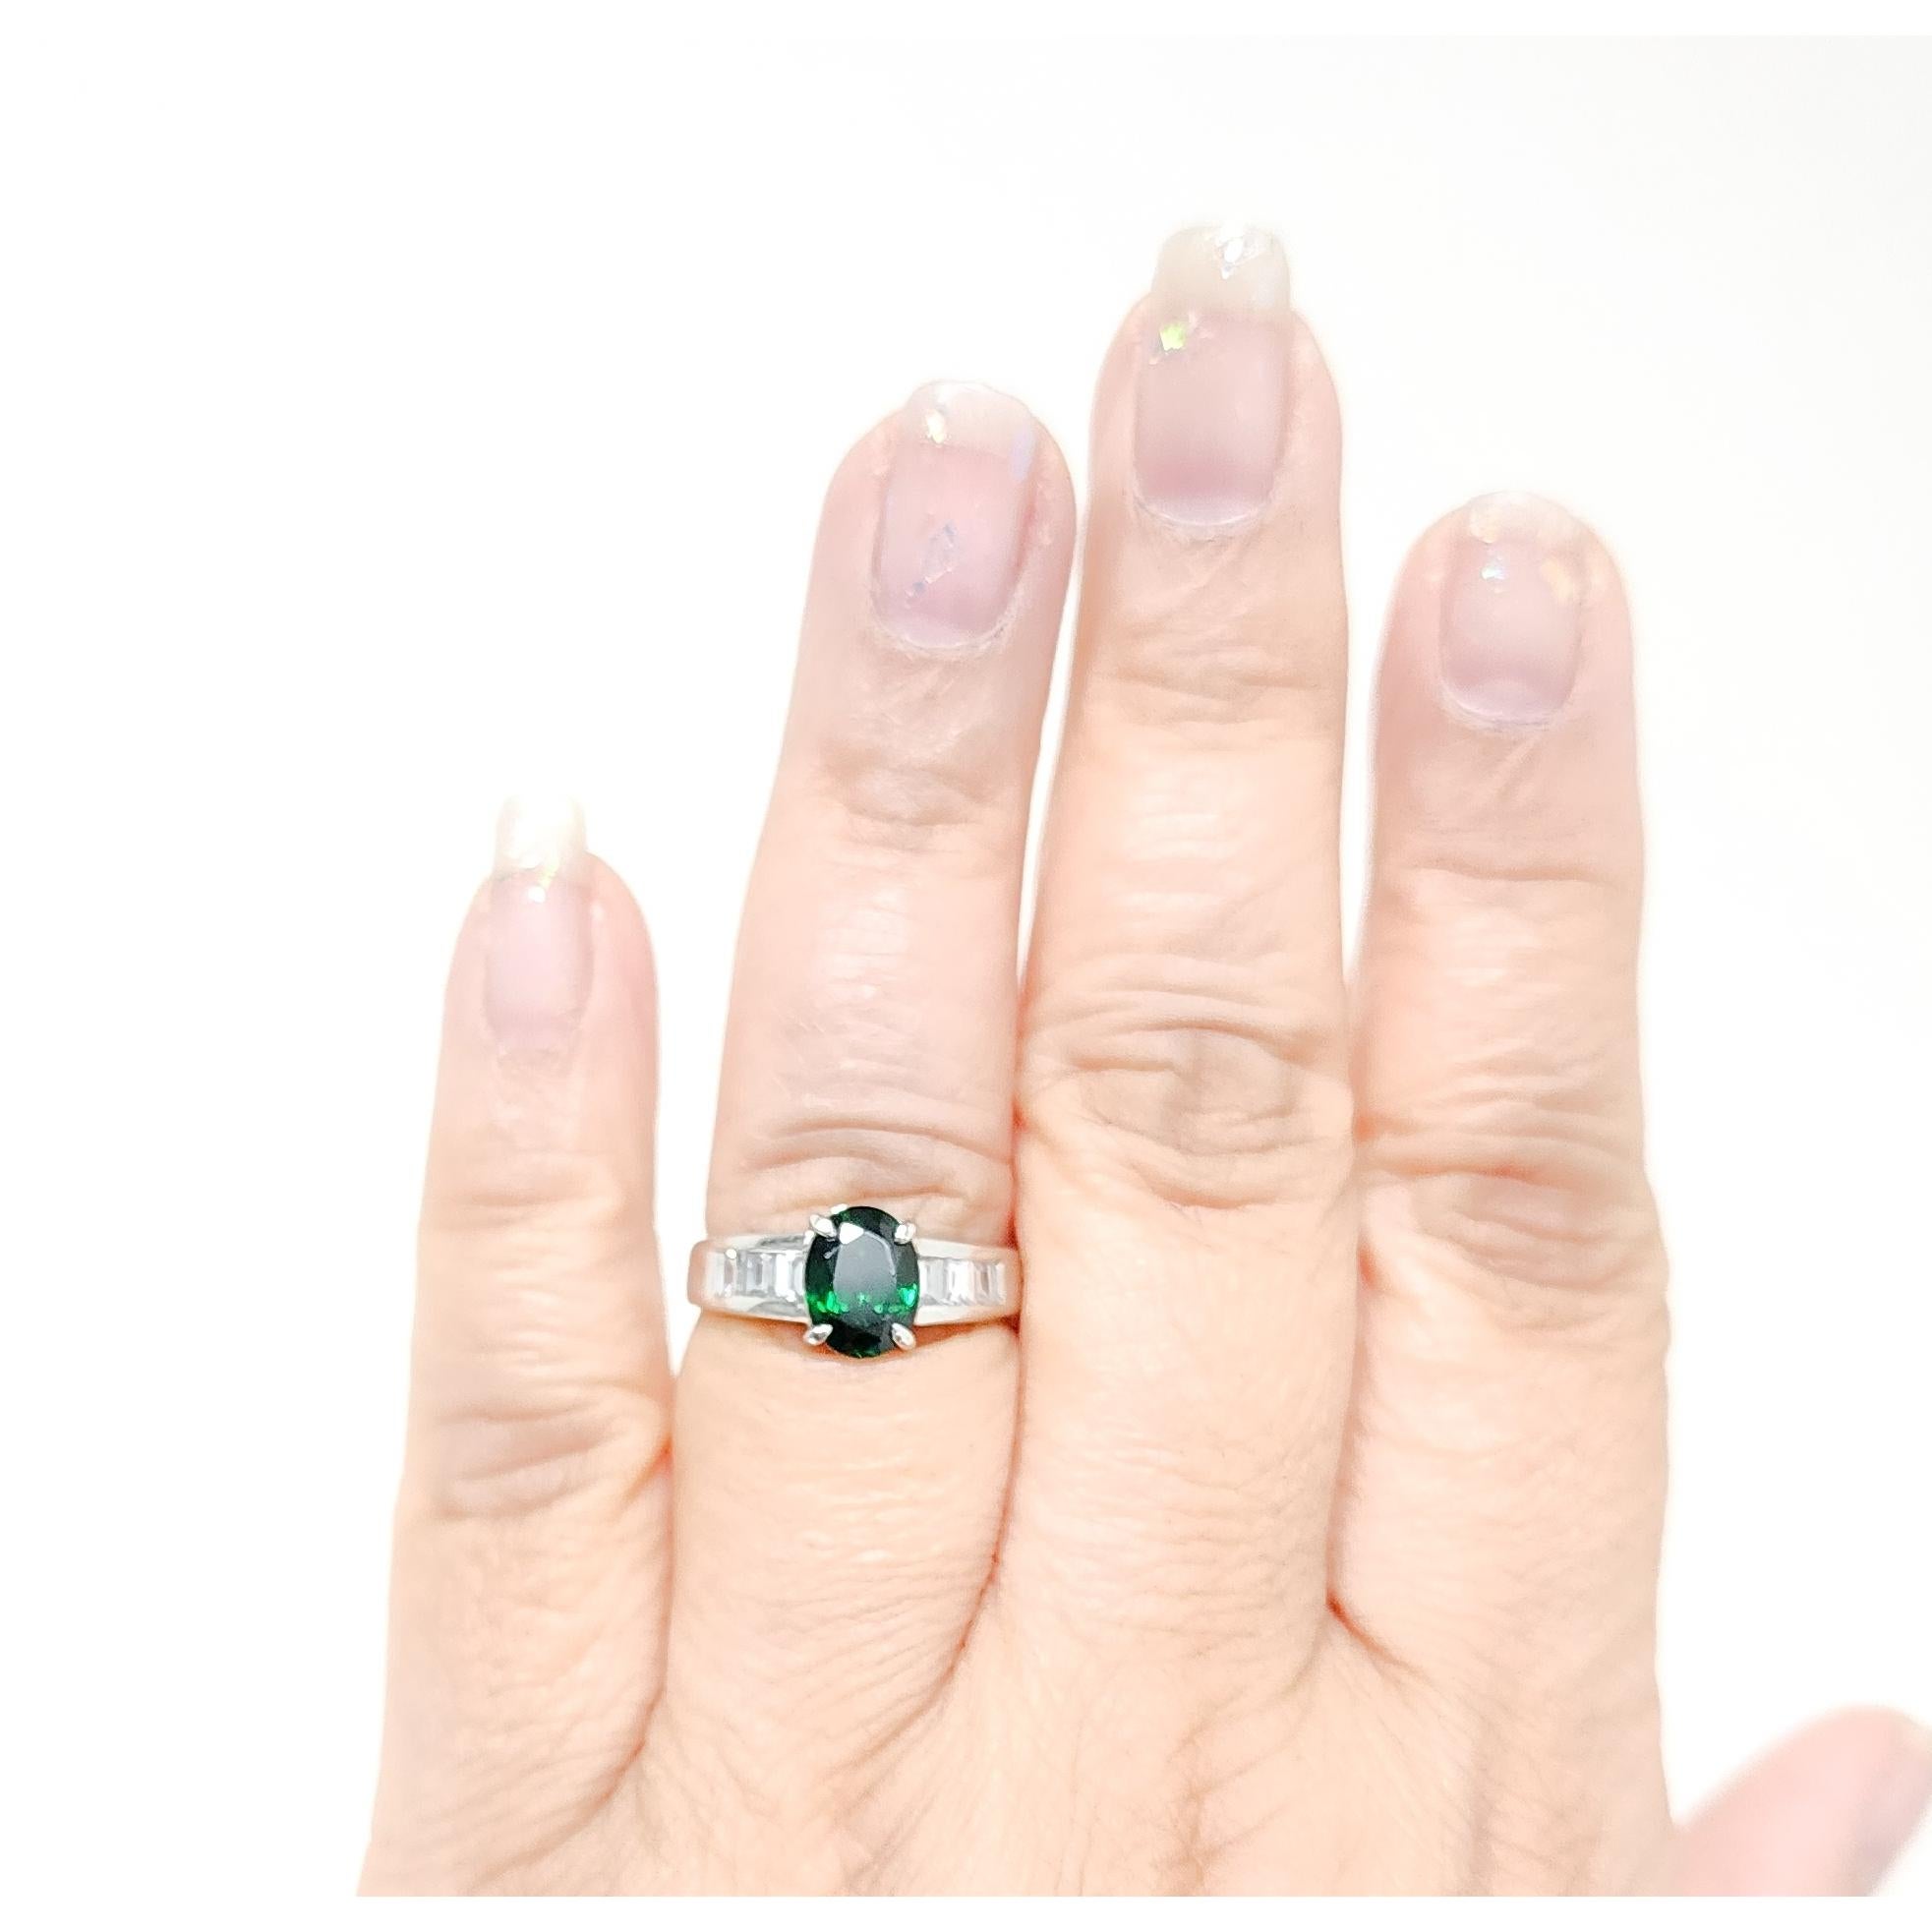 Wunderschönes hellgrünes 2,01 ct. grünes Tsavorit-Granat-Oval mit 0,55 ct. hochwertigen weißen Diamant-Baguetten.  Handgefertigt in Platin.  Ring Größe 7,5.